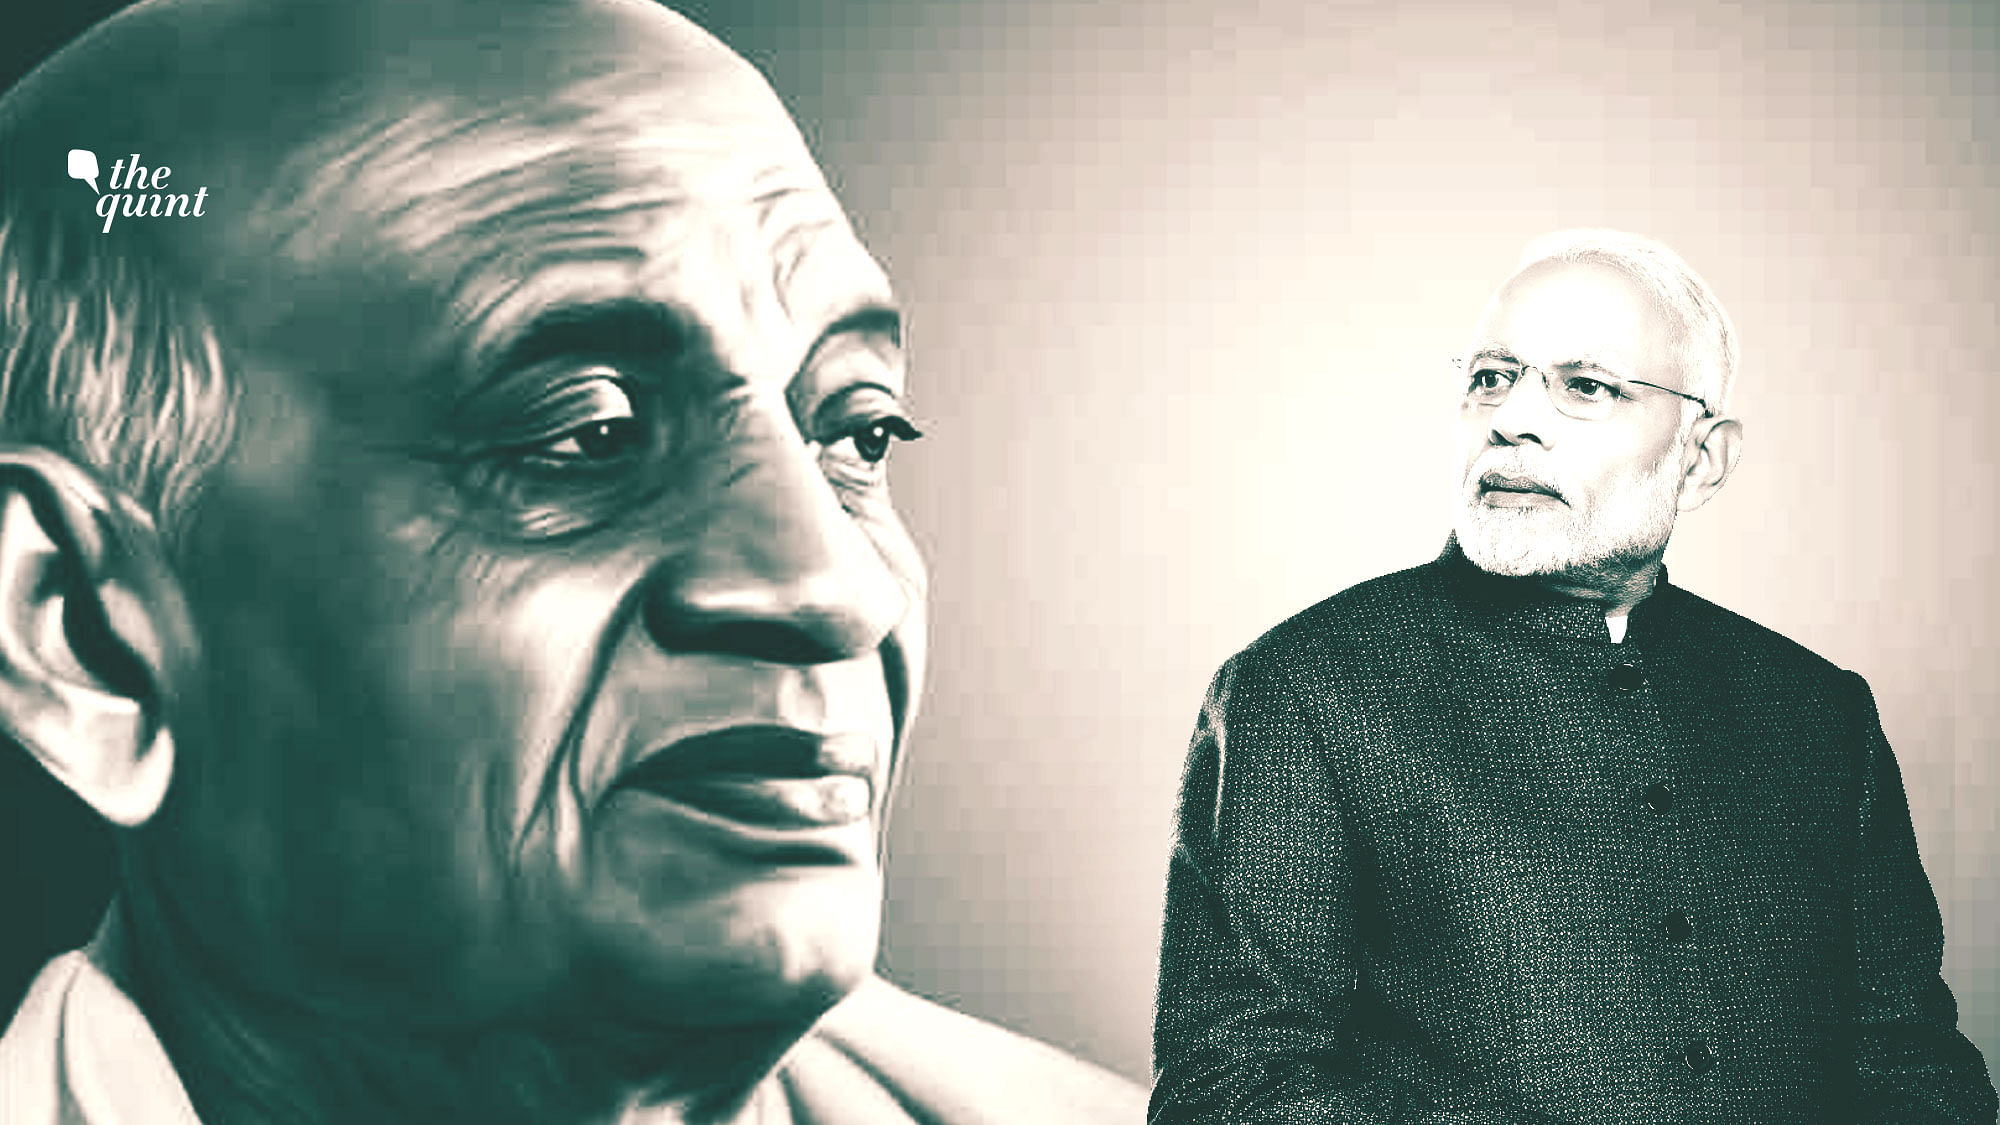 Image of Sardar Patel (L) and PM Modi used for representational purposes.